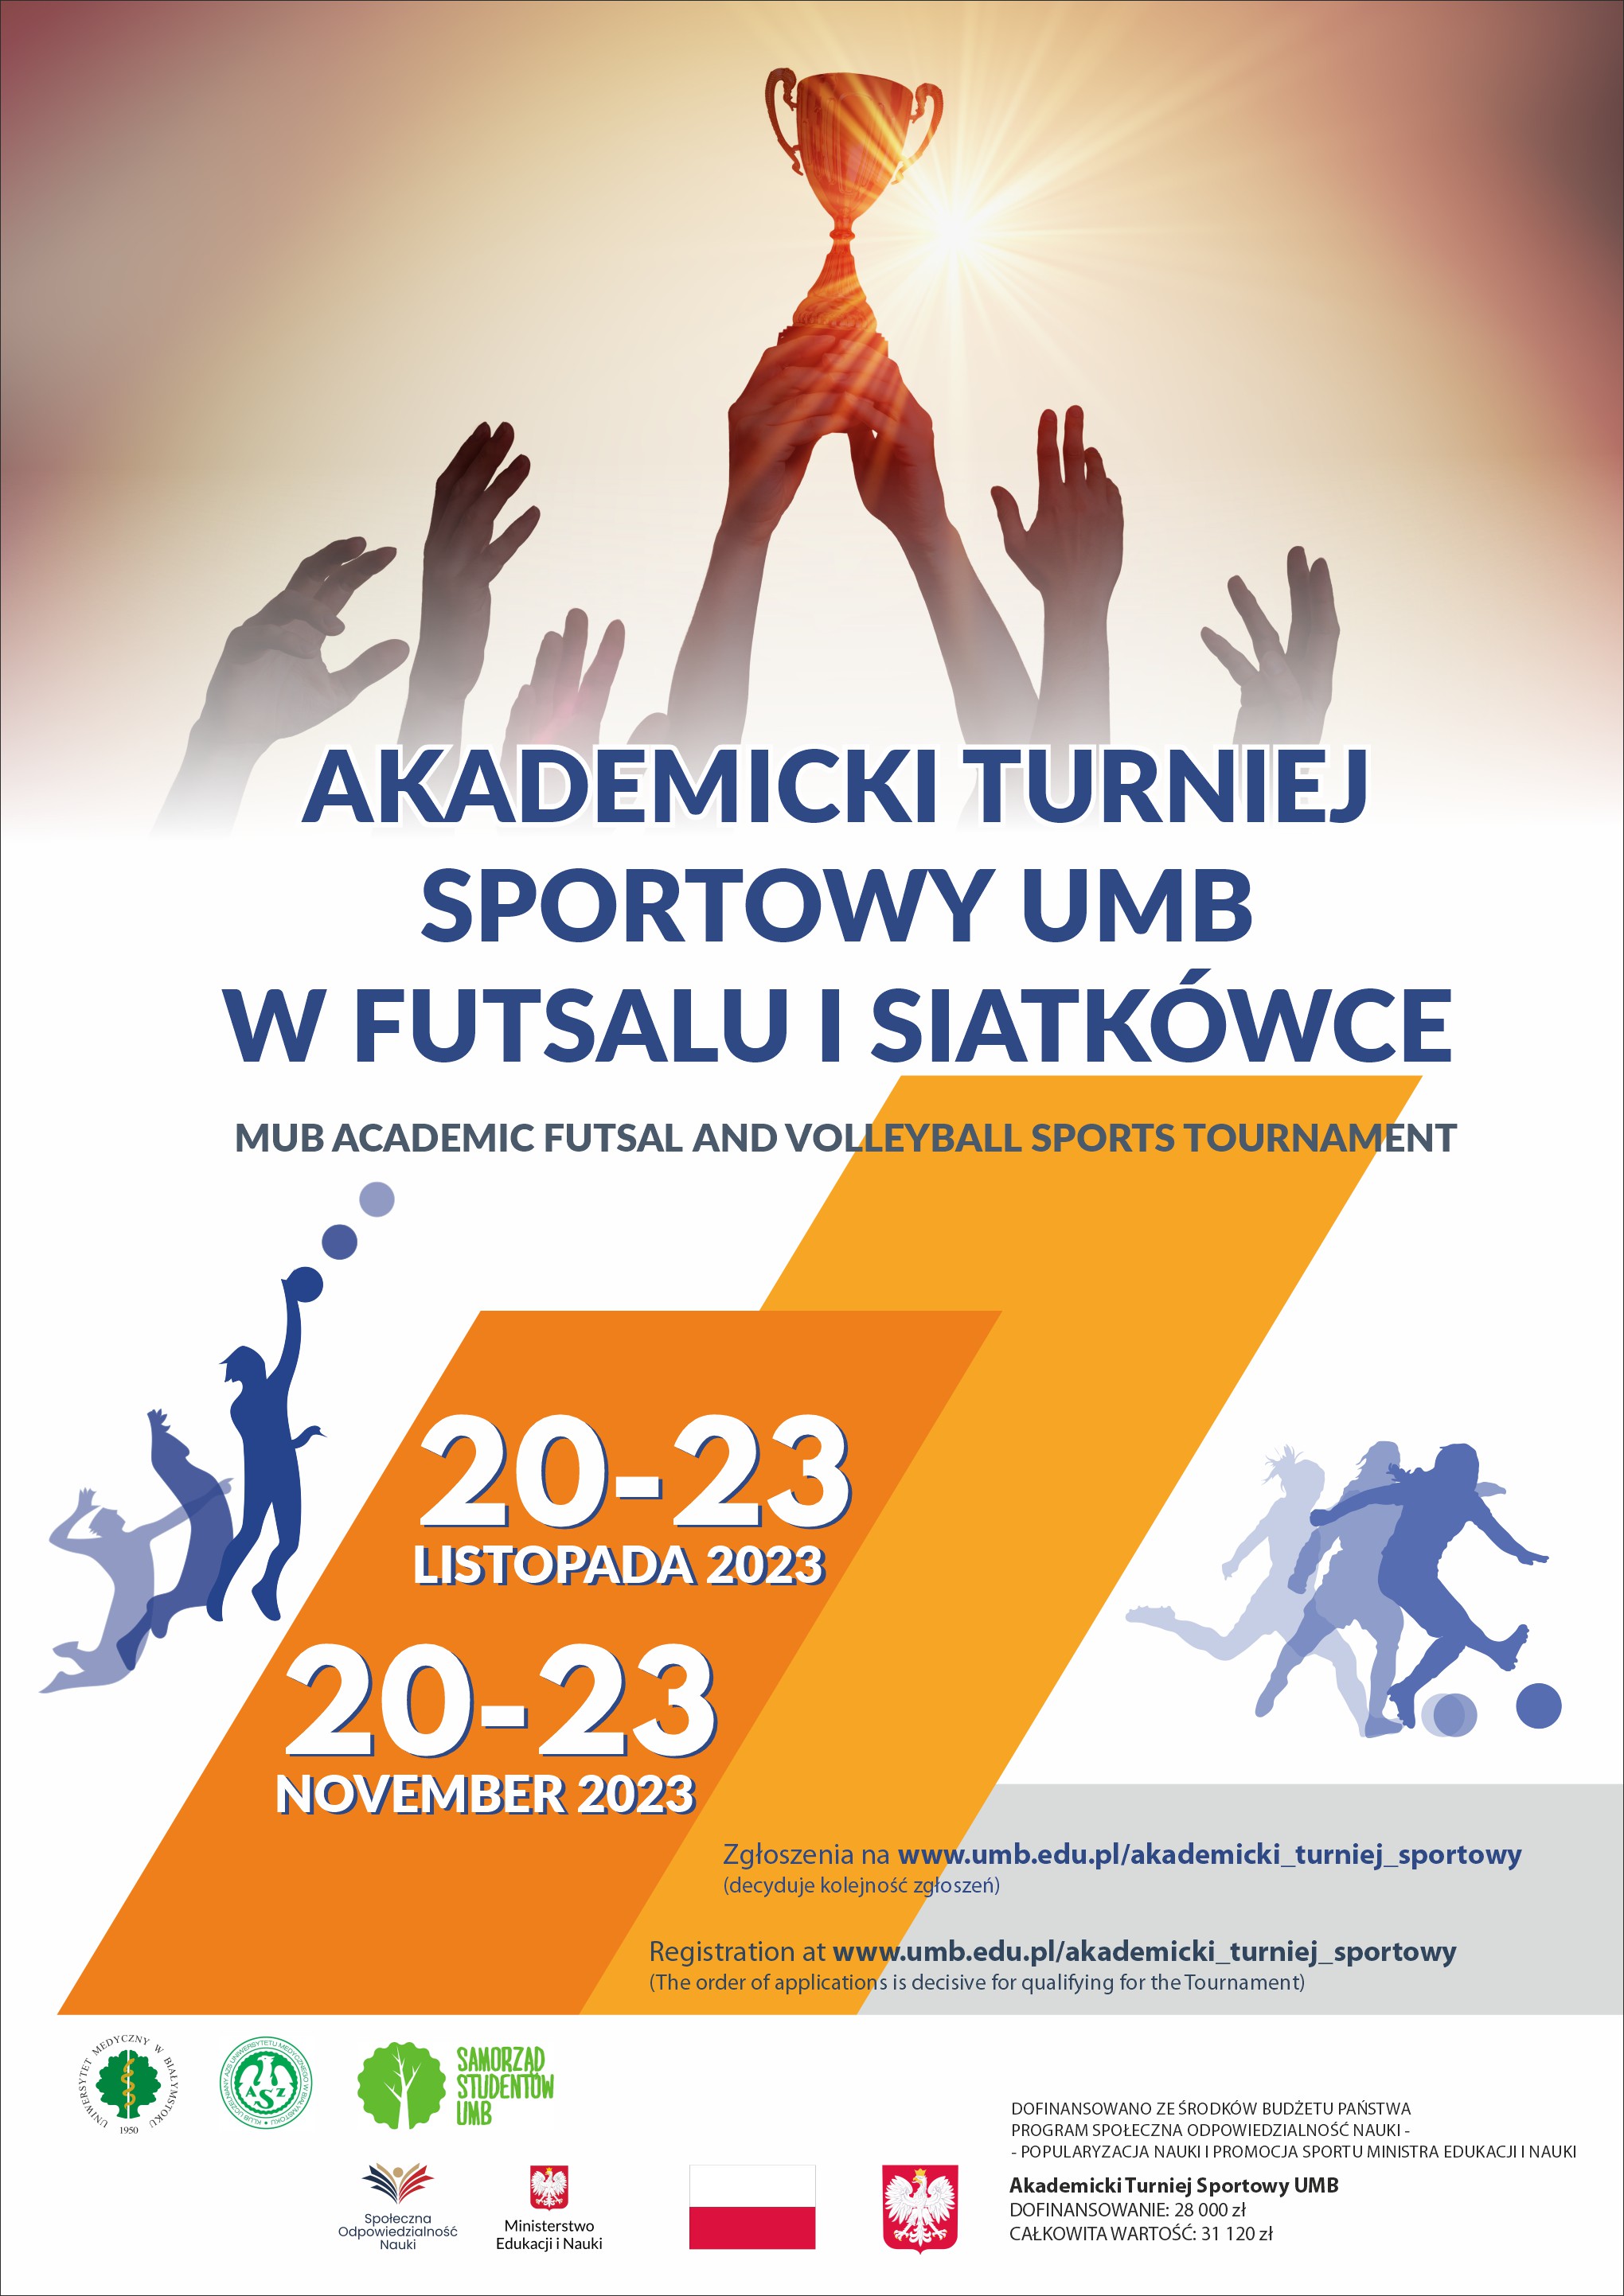 Akademicki Turniej Sportowy UMB 20-23 listopada 2023